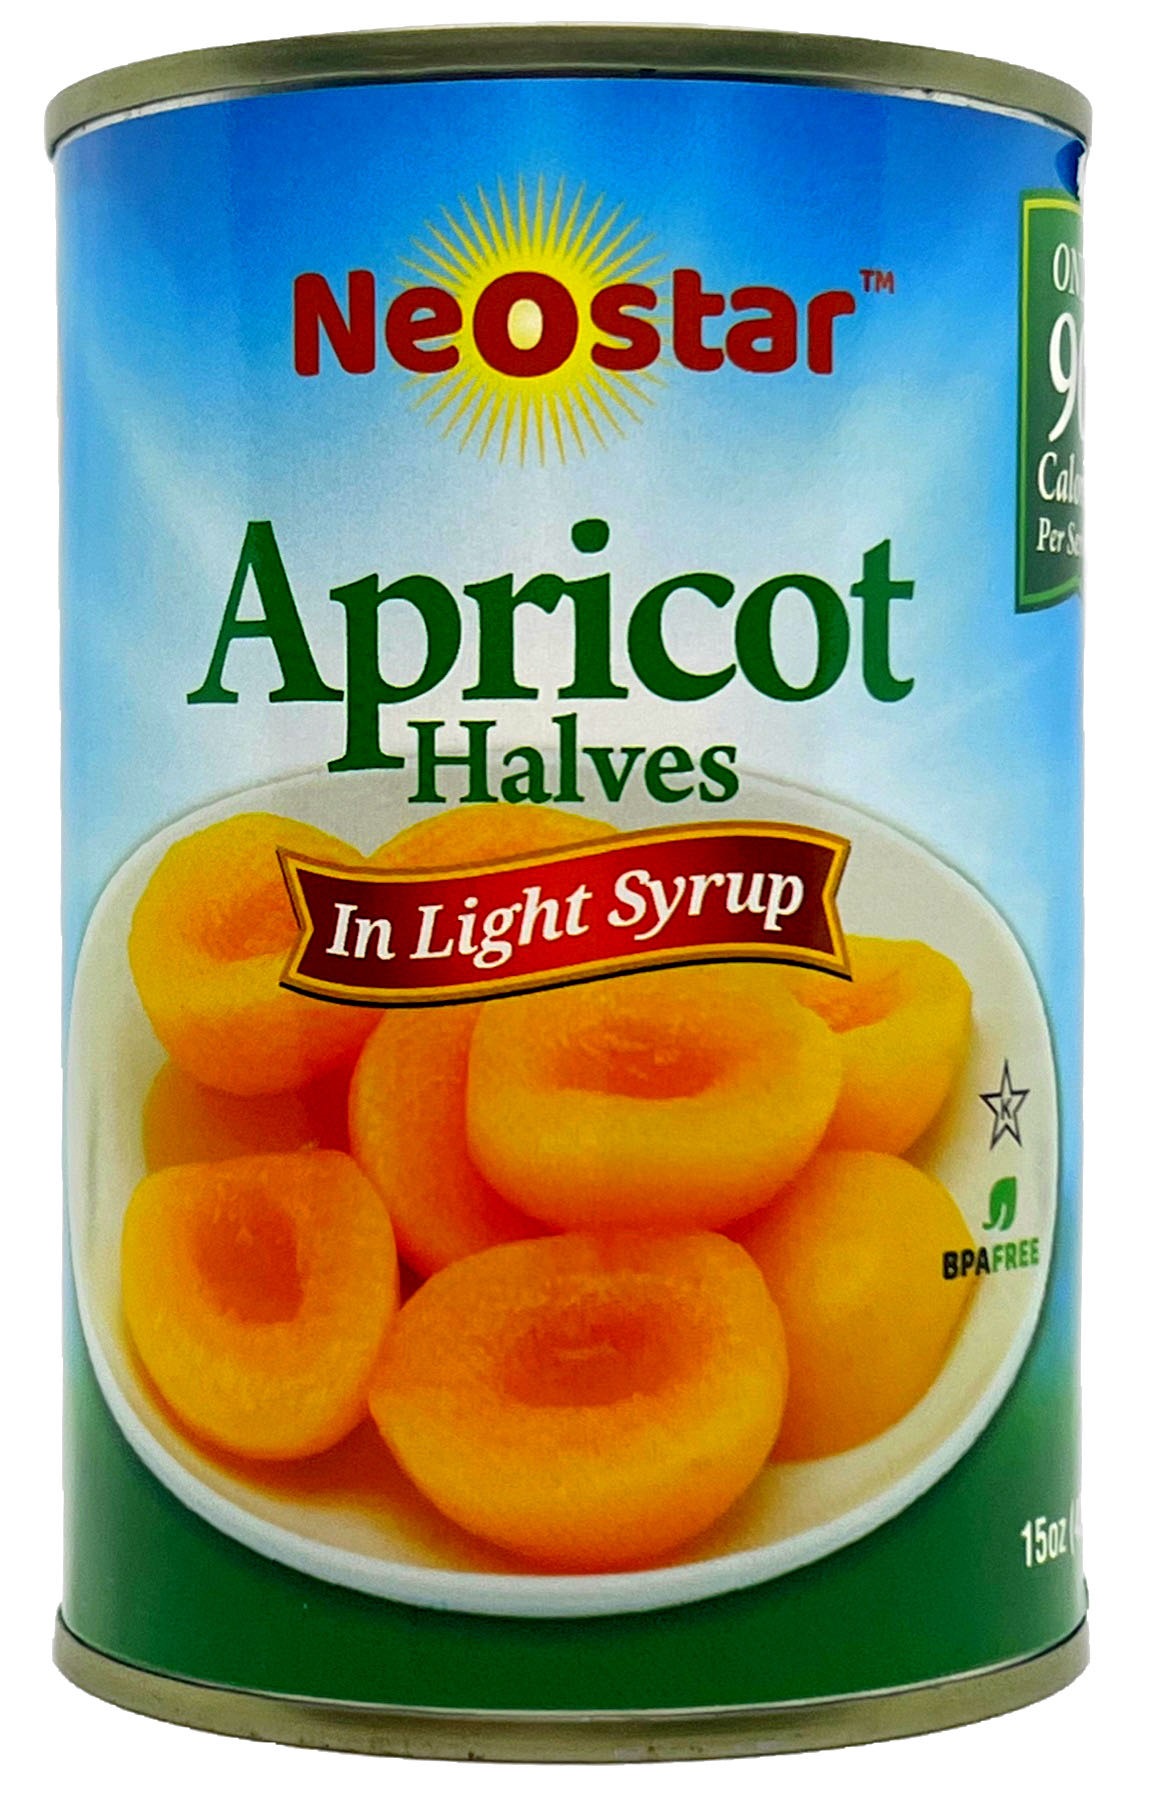 #300 (15oz) Apricot Halves, Light Syrup